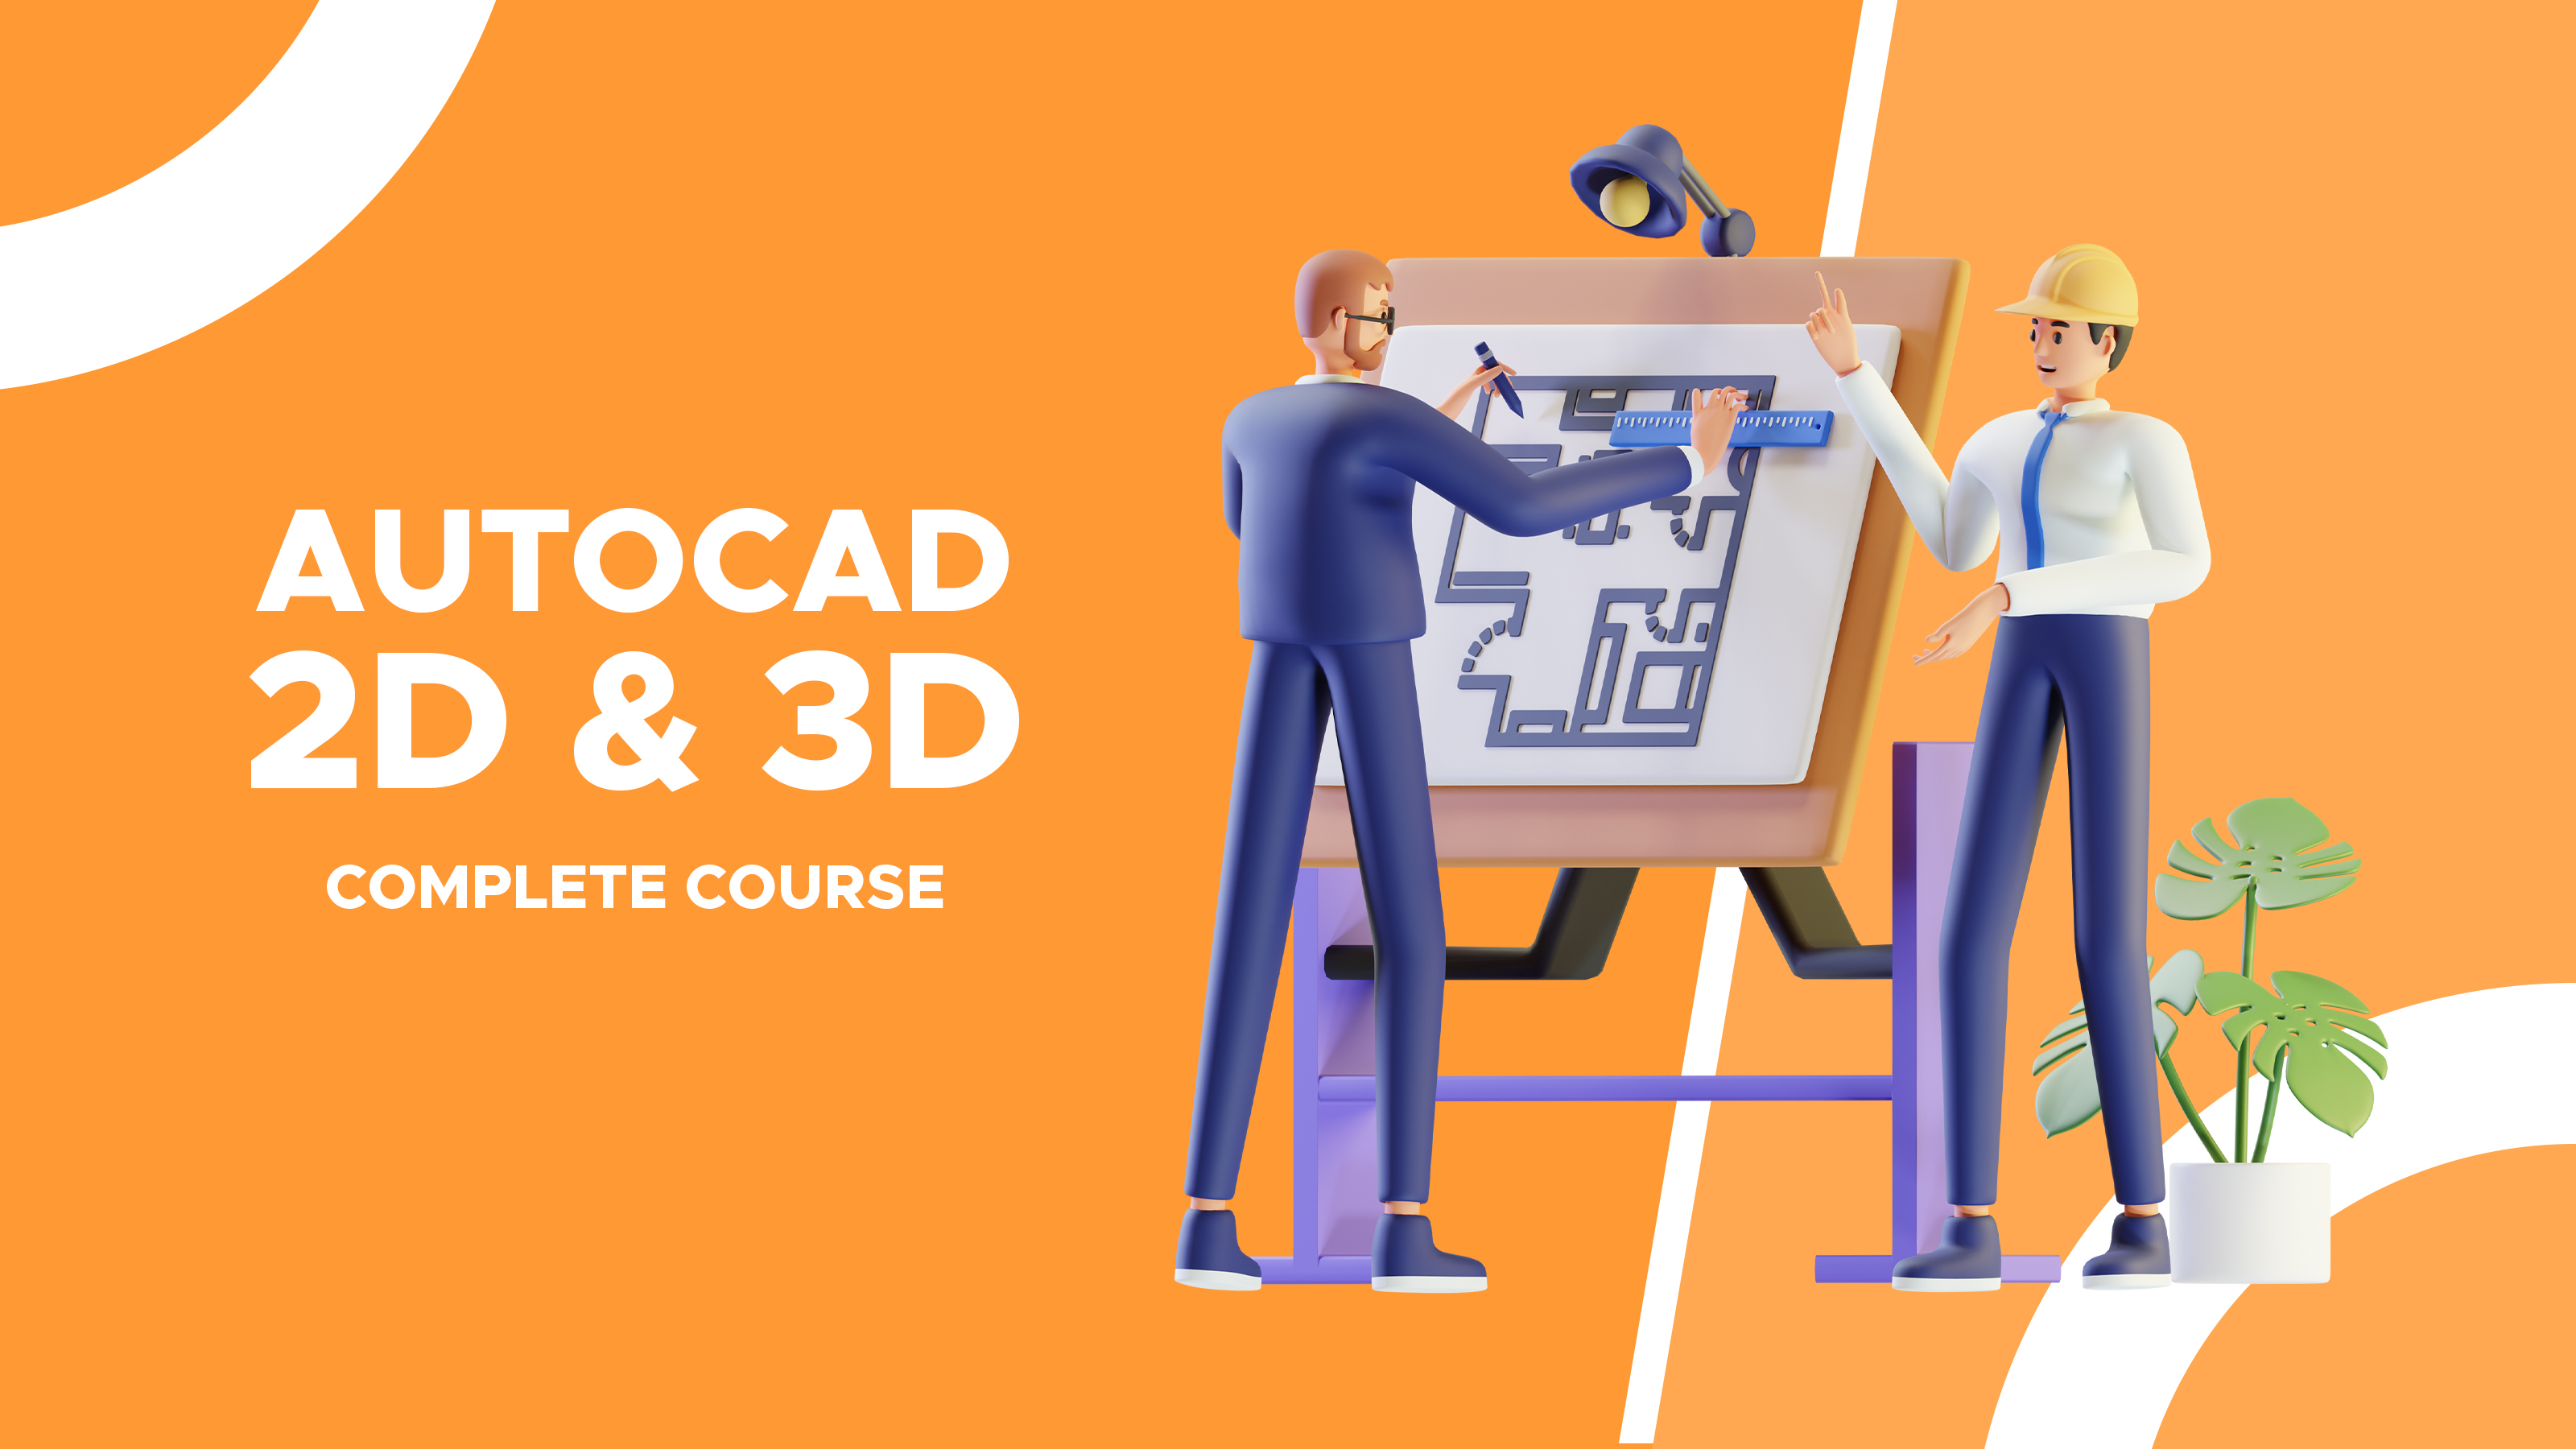 2D CAD EXERCISES 195 - STUDYCADCAM | Cad drawing, Isometric drawing  exercises, Autocad isometric drawing